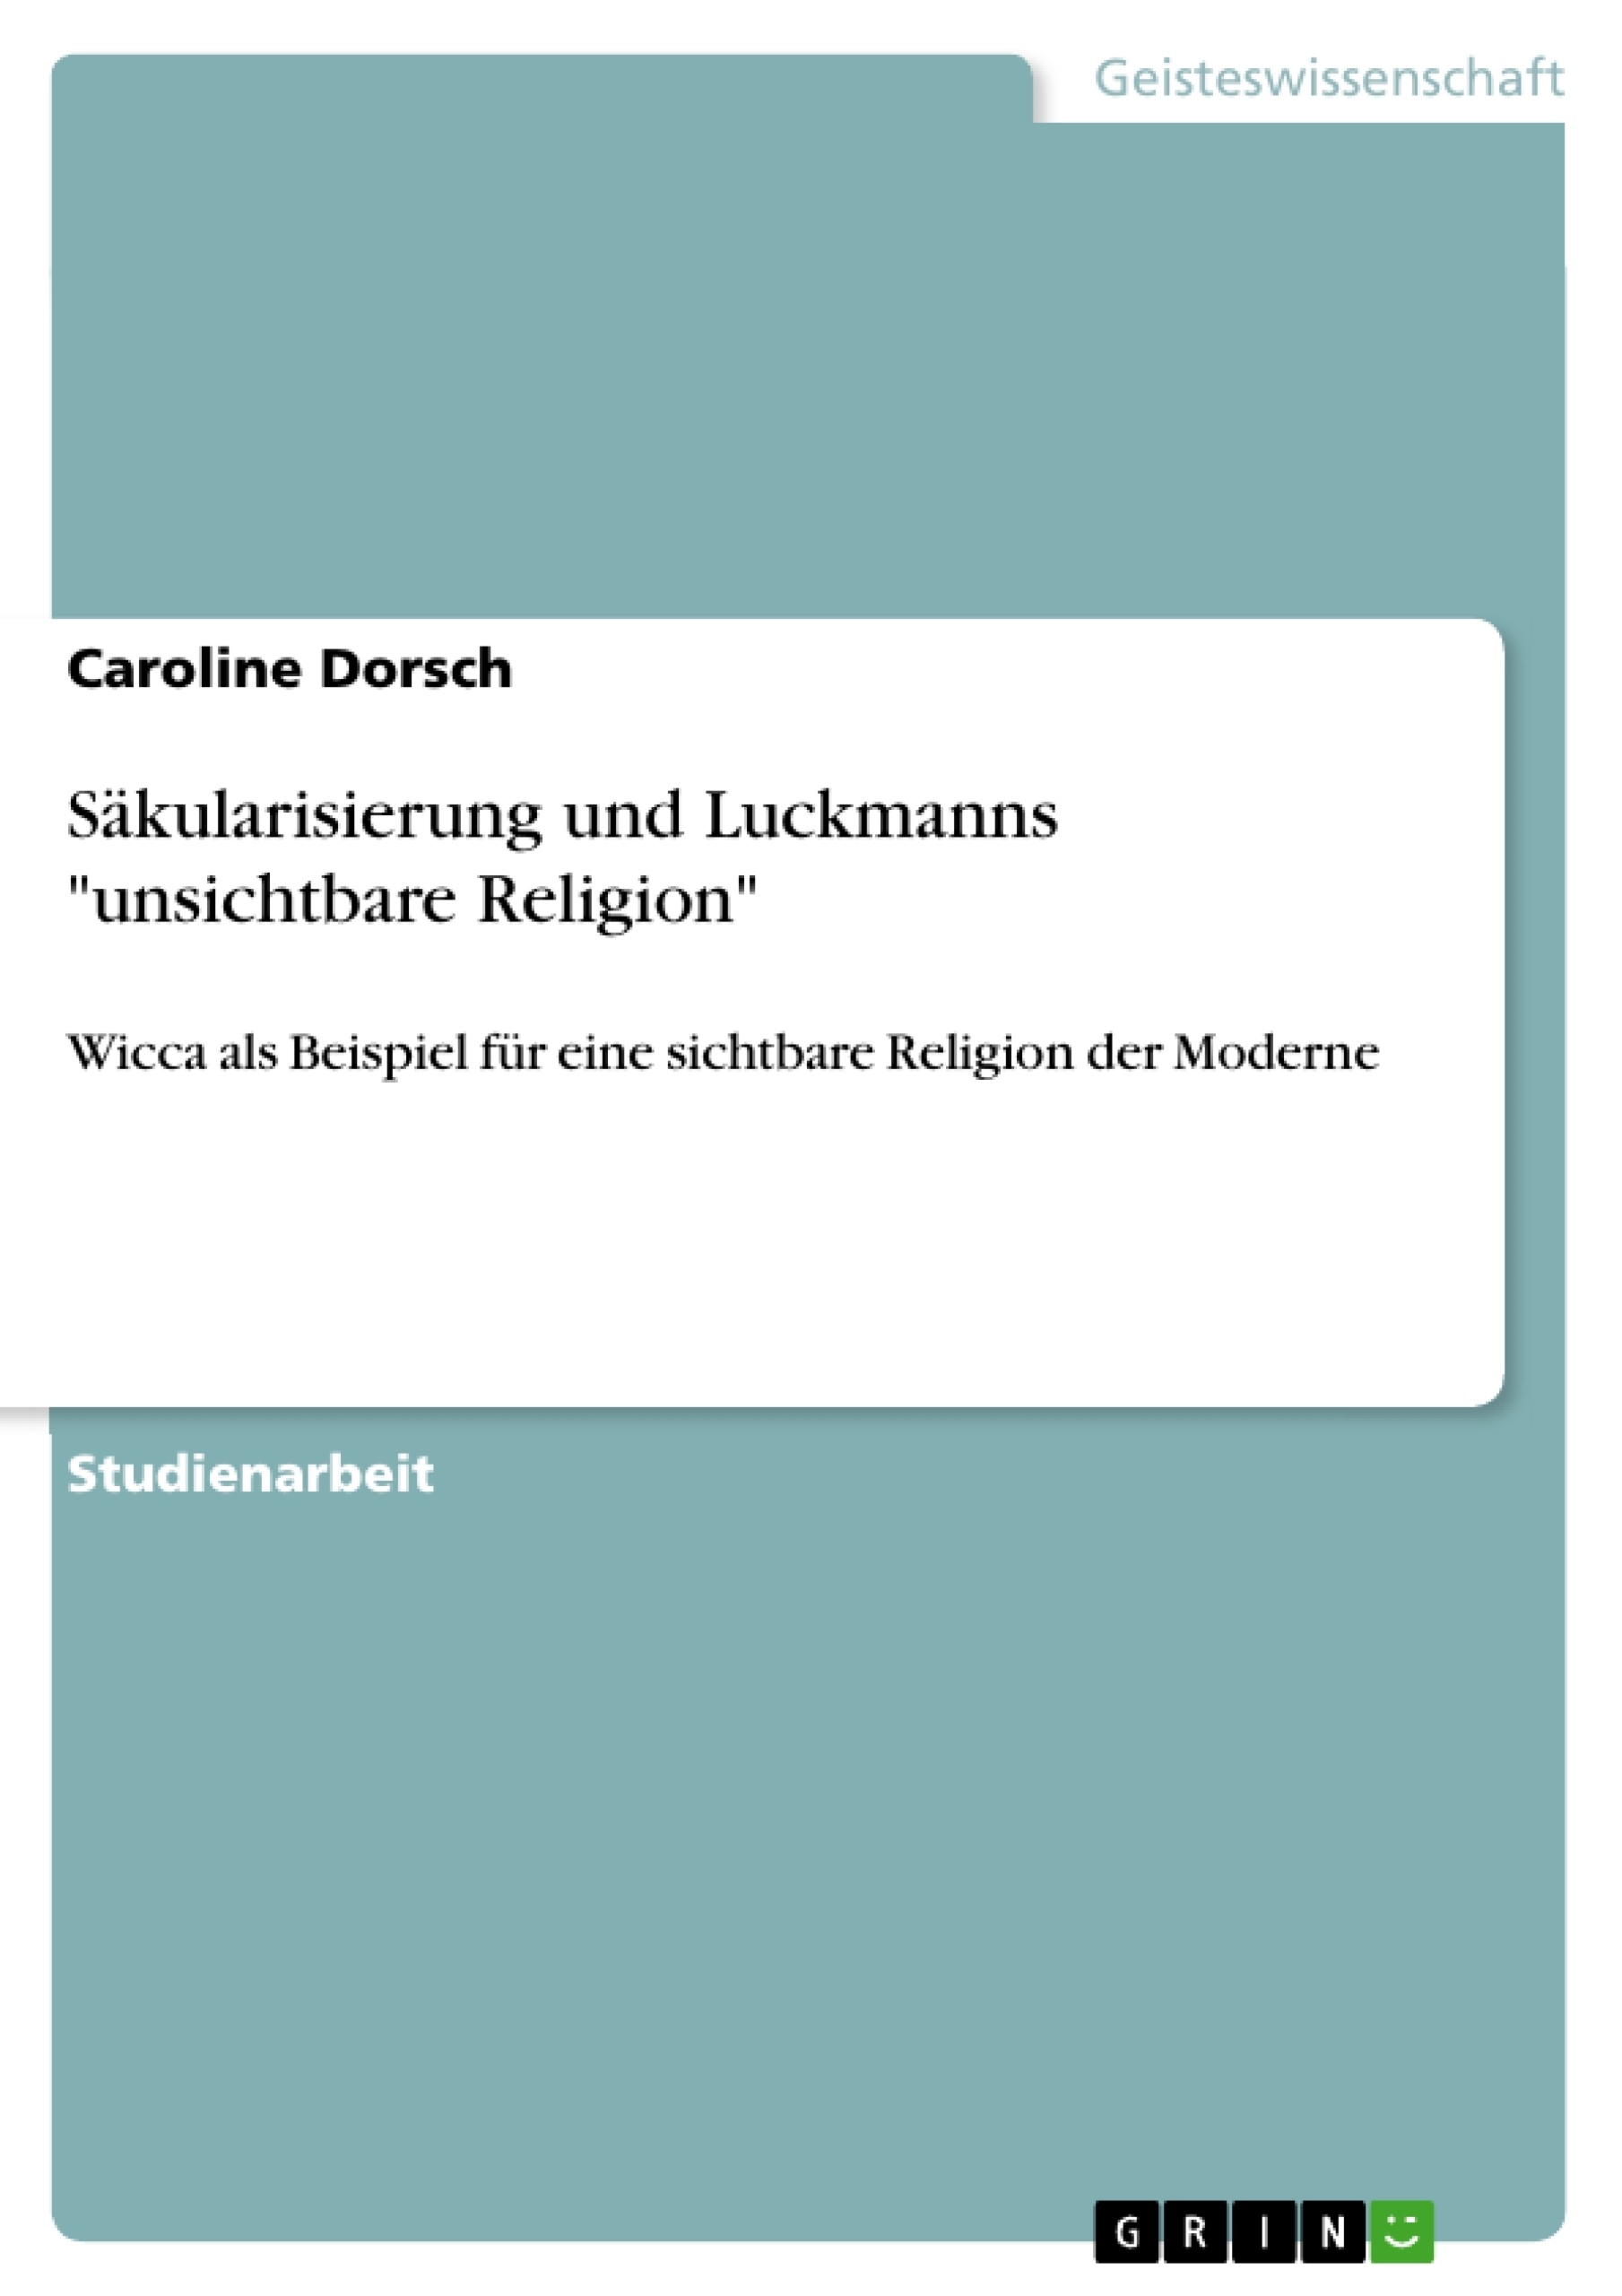 Titre: Säkularisierung und Luckmanns "unsichtbare Religion"